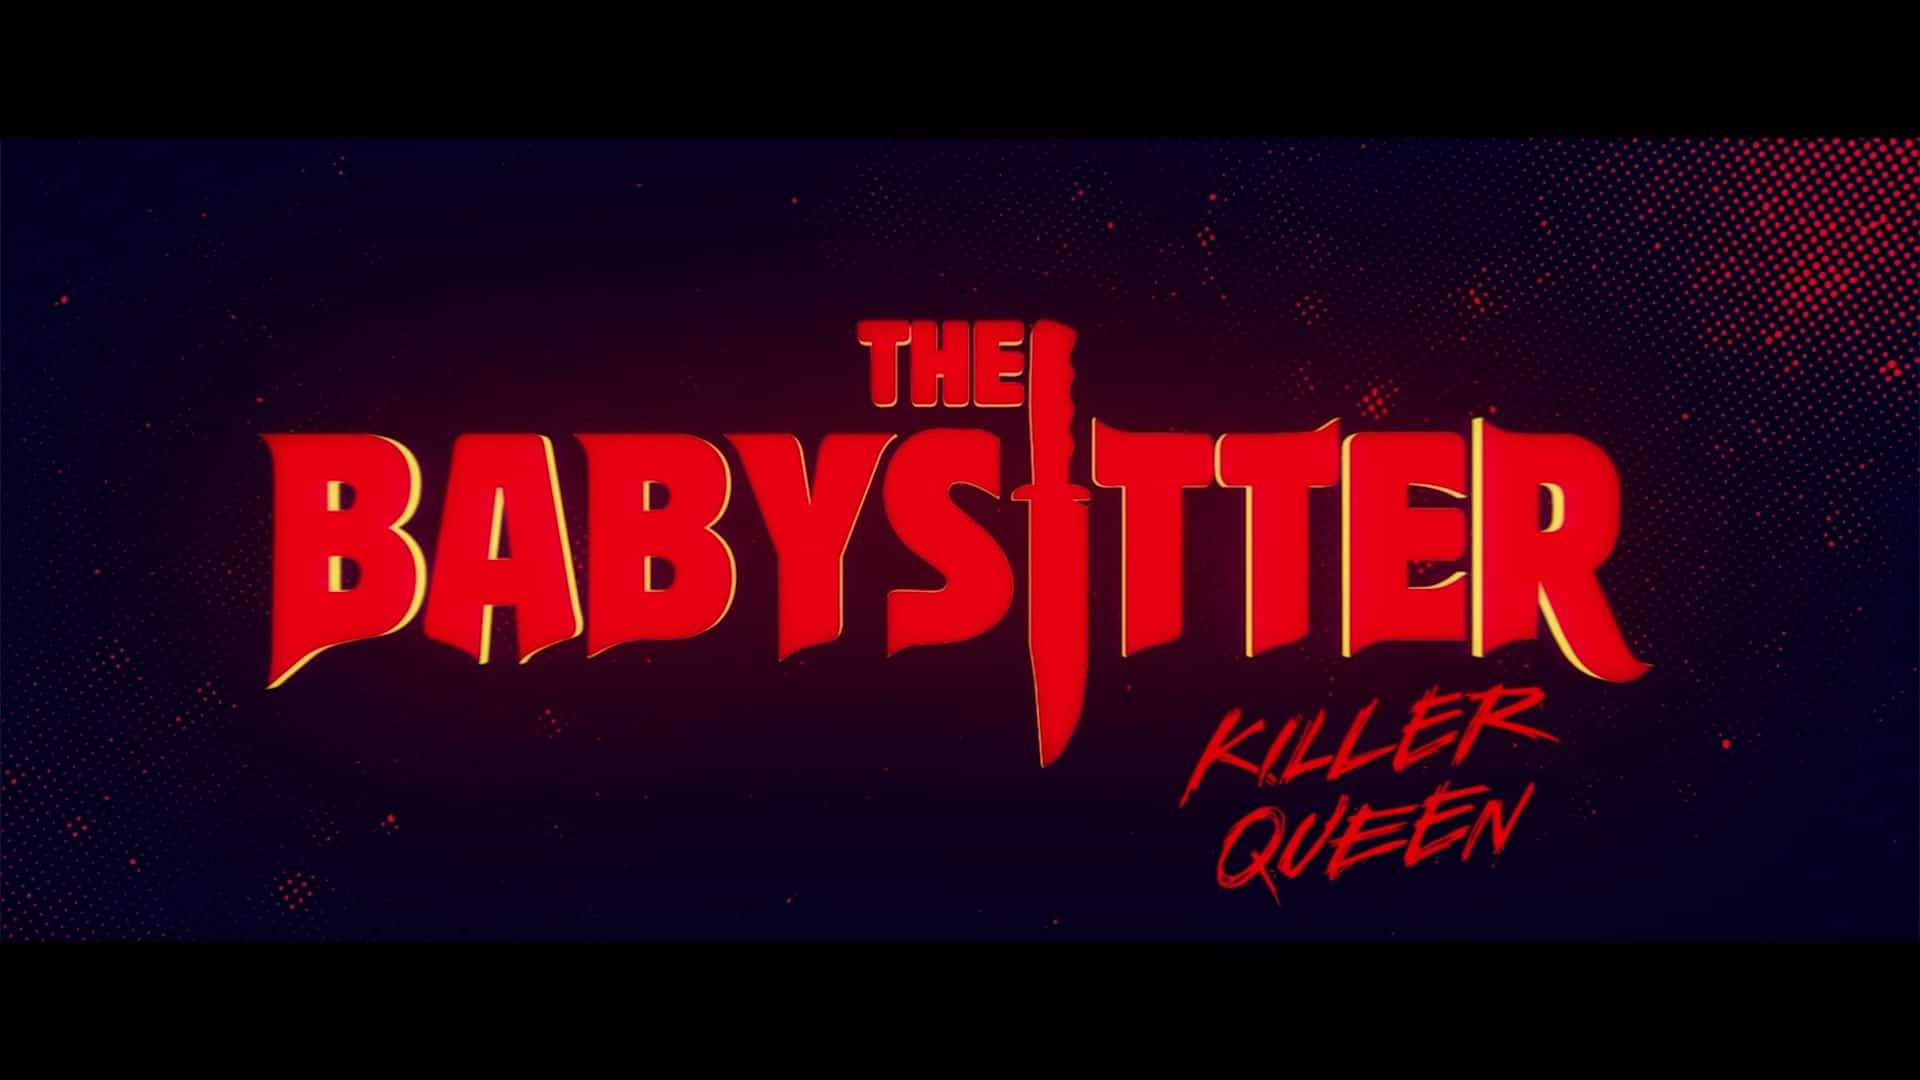 Netflix The Babysitter Killer Queen Trailer, Netflix Comedy, Netflix Horror, Coming to Netflix in September 2020